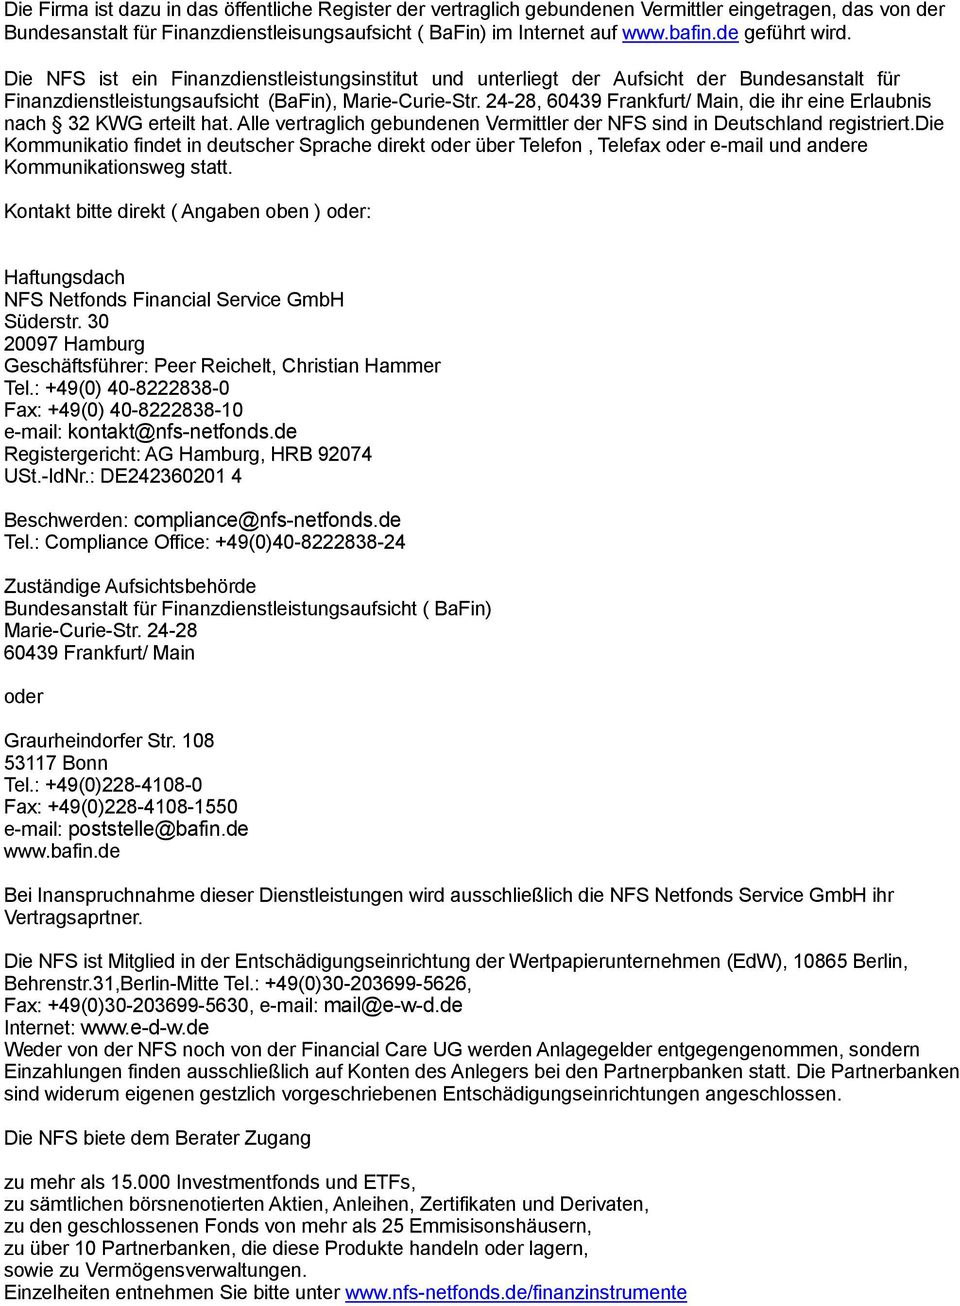 24-28, 60439 Frankfurt/ Main, die ihr eine Erlaubnis nach 32 KWG erteilt hat. Alle vertraglich gebundenen Vermittler der NFS sind in Deutschland registriert.